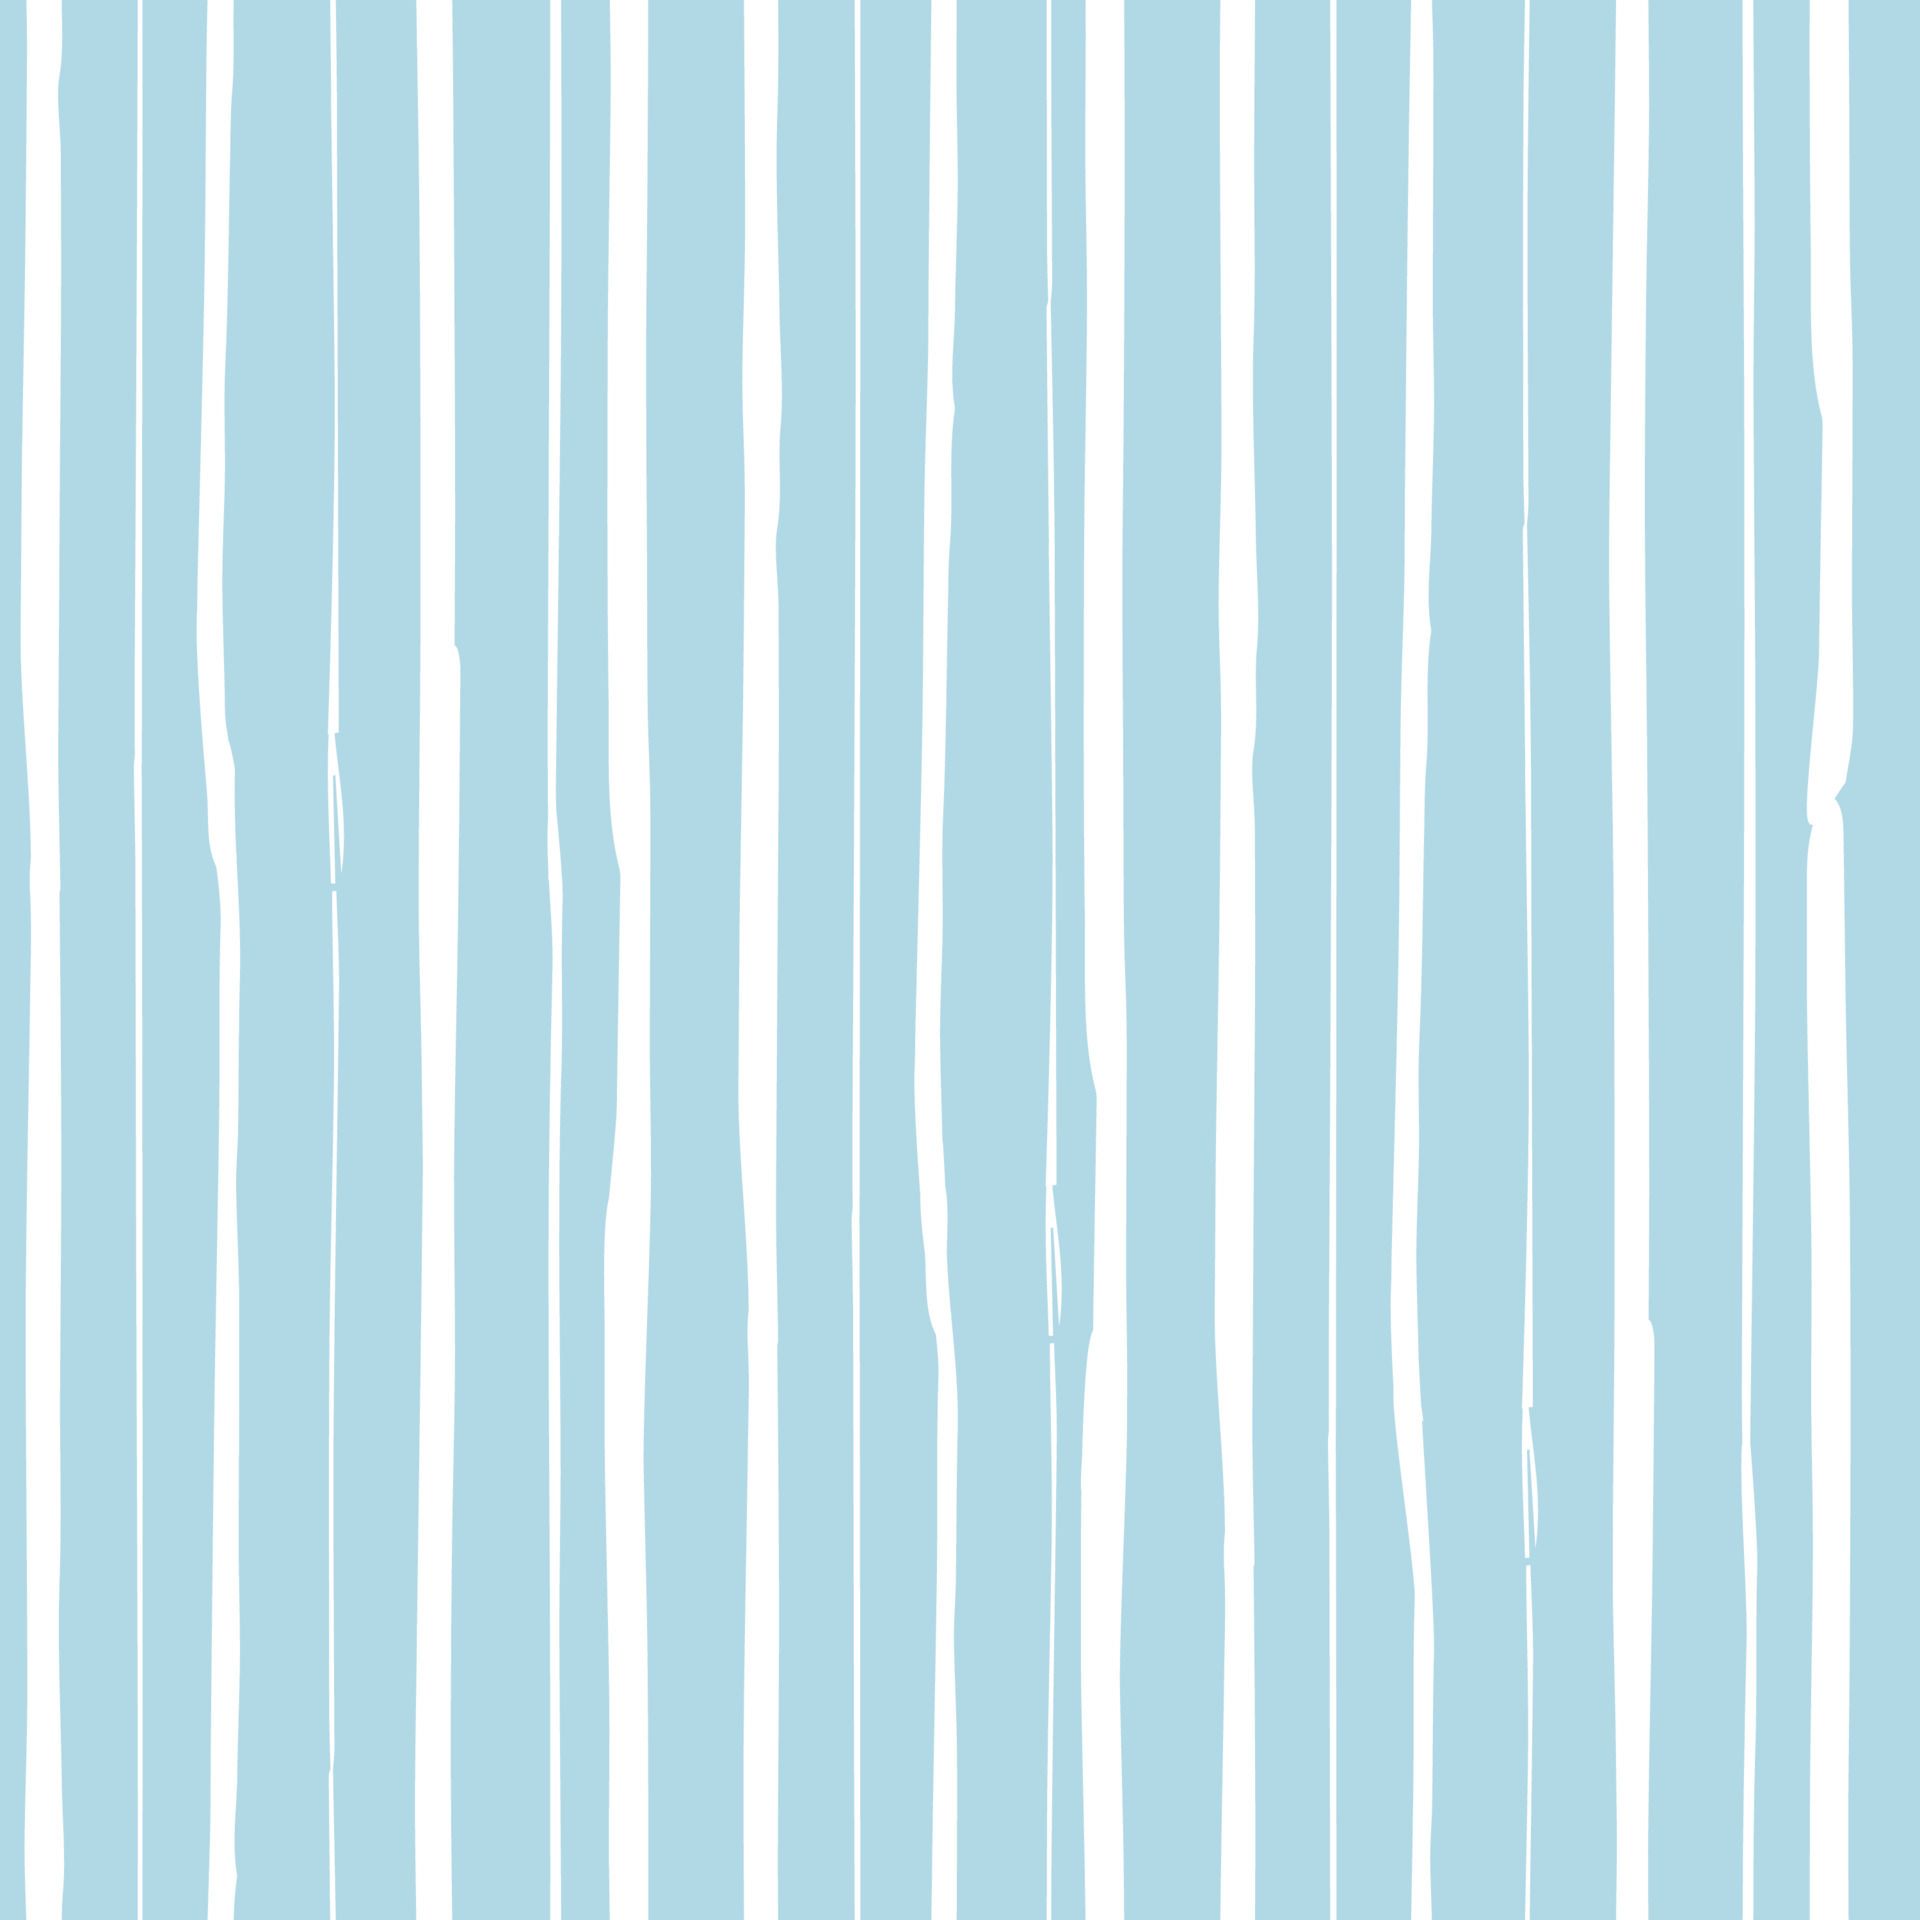  Streifen Hintergrundbild 1920x1920. Nadelstreifen nahtlos wiederholendes Vektormuster. frei handgezeichnete unebene Streifen, Balken, Linien. weiße vertikale Streifen auf blauem Hintergrund isoliert. textur für keramikfliesentapeten, musterfüllungen, web 6762685 Vektor Kunst bei Vecteezy